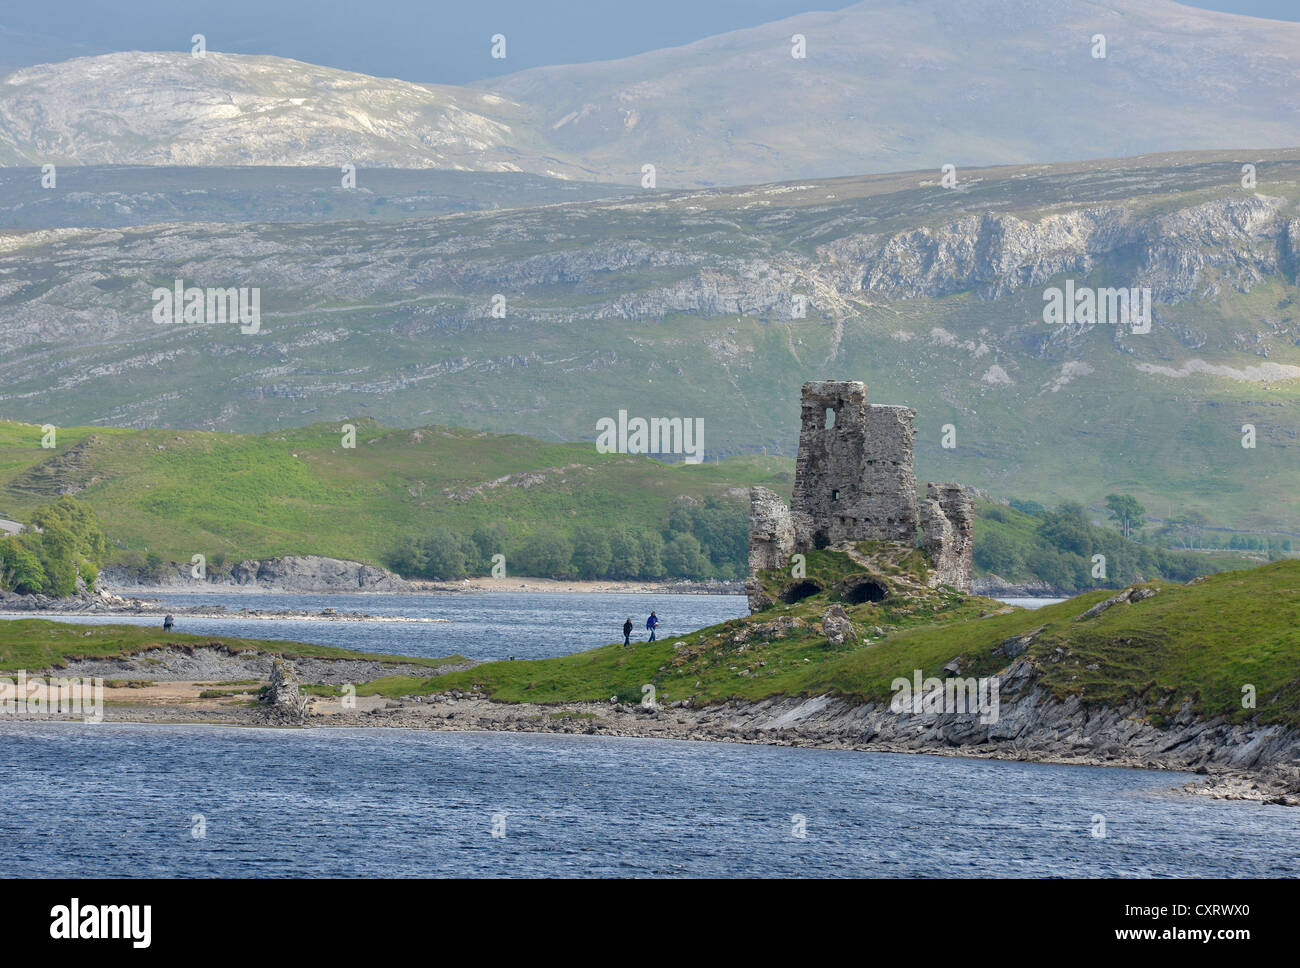 Ardvreck castello, le rovine del castello su una piccola penisola in acque dolci del Loch Assynt, Highlands scozzesi, Sutherland, Scozia Foto Stock